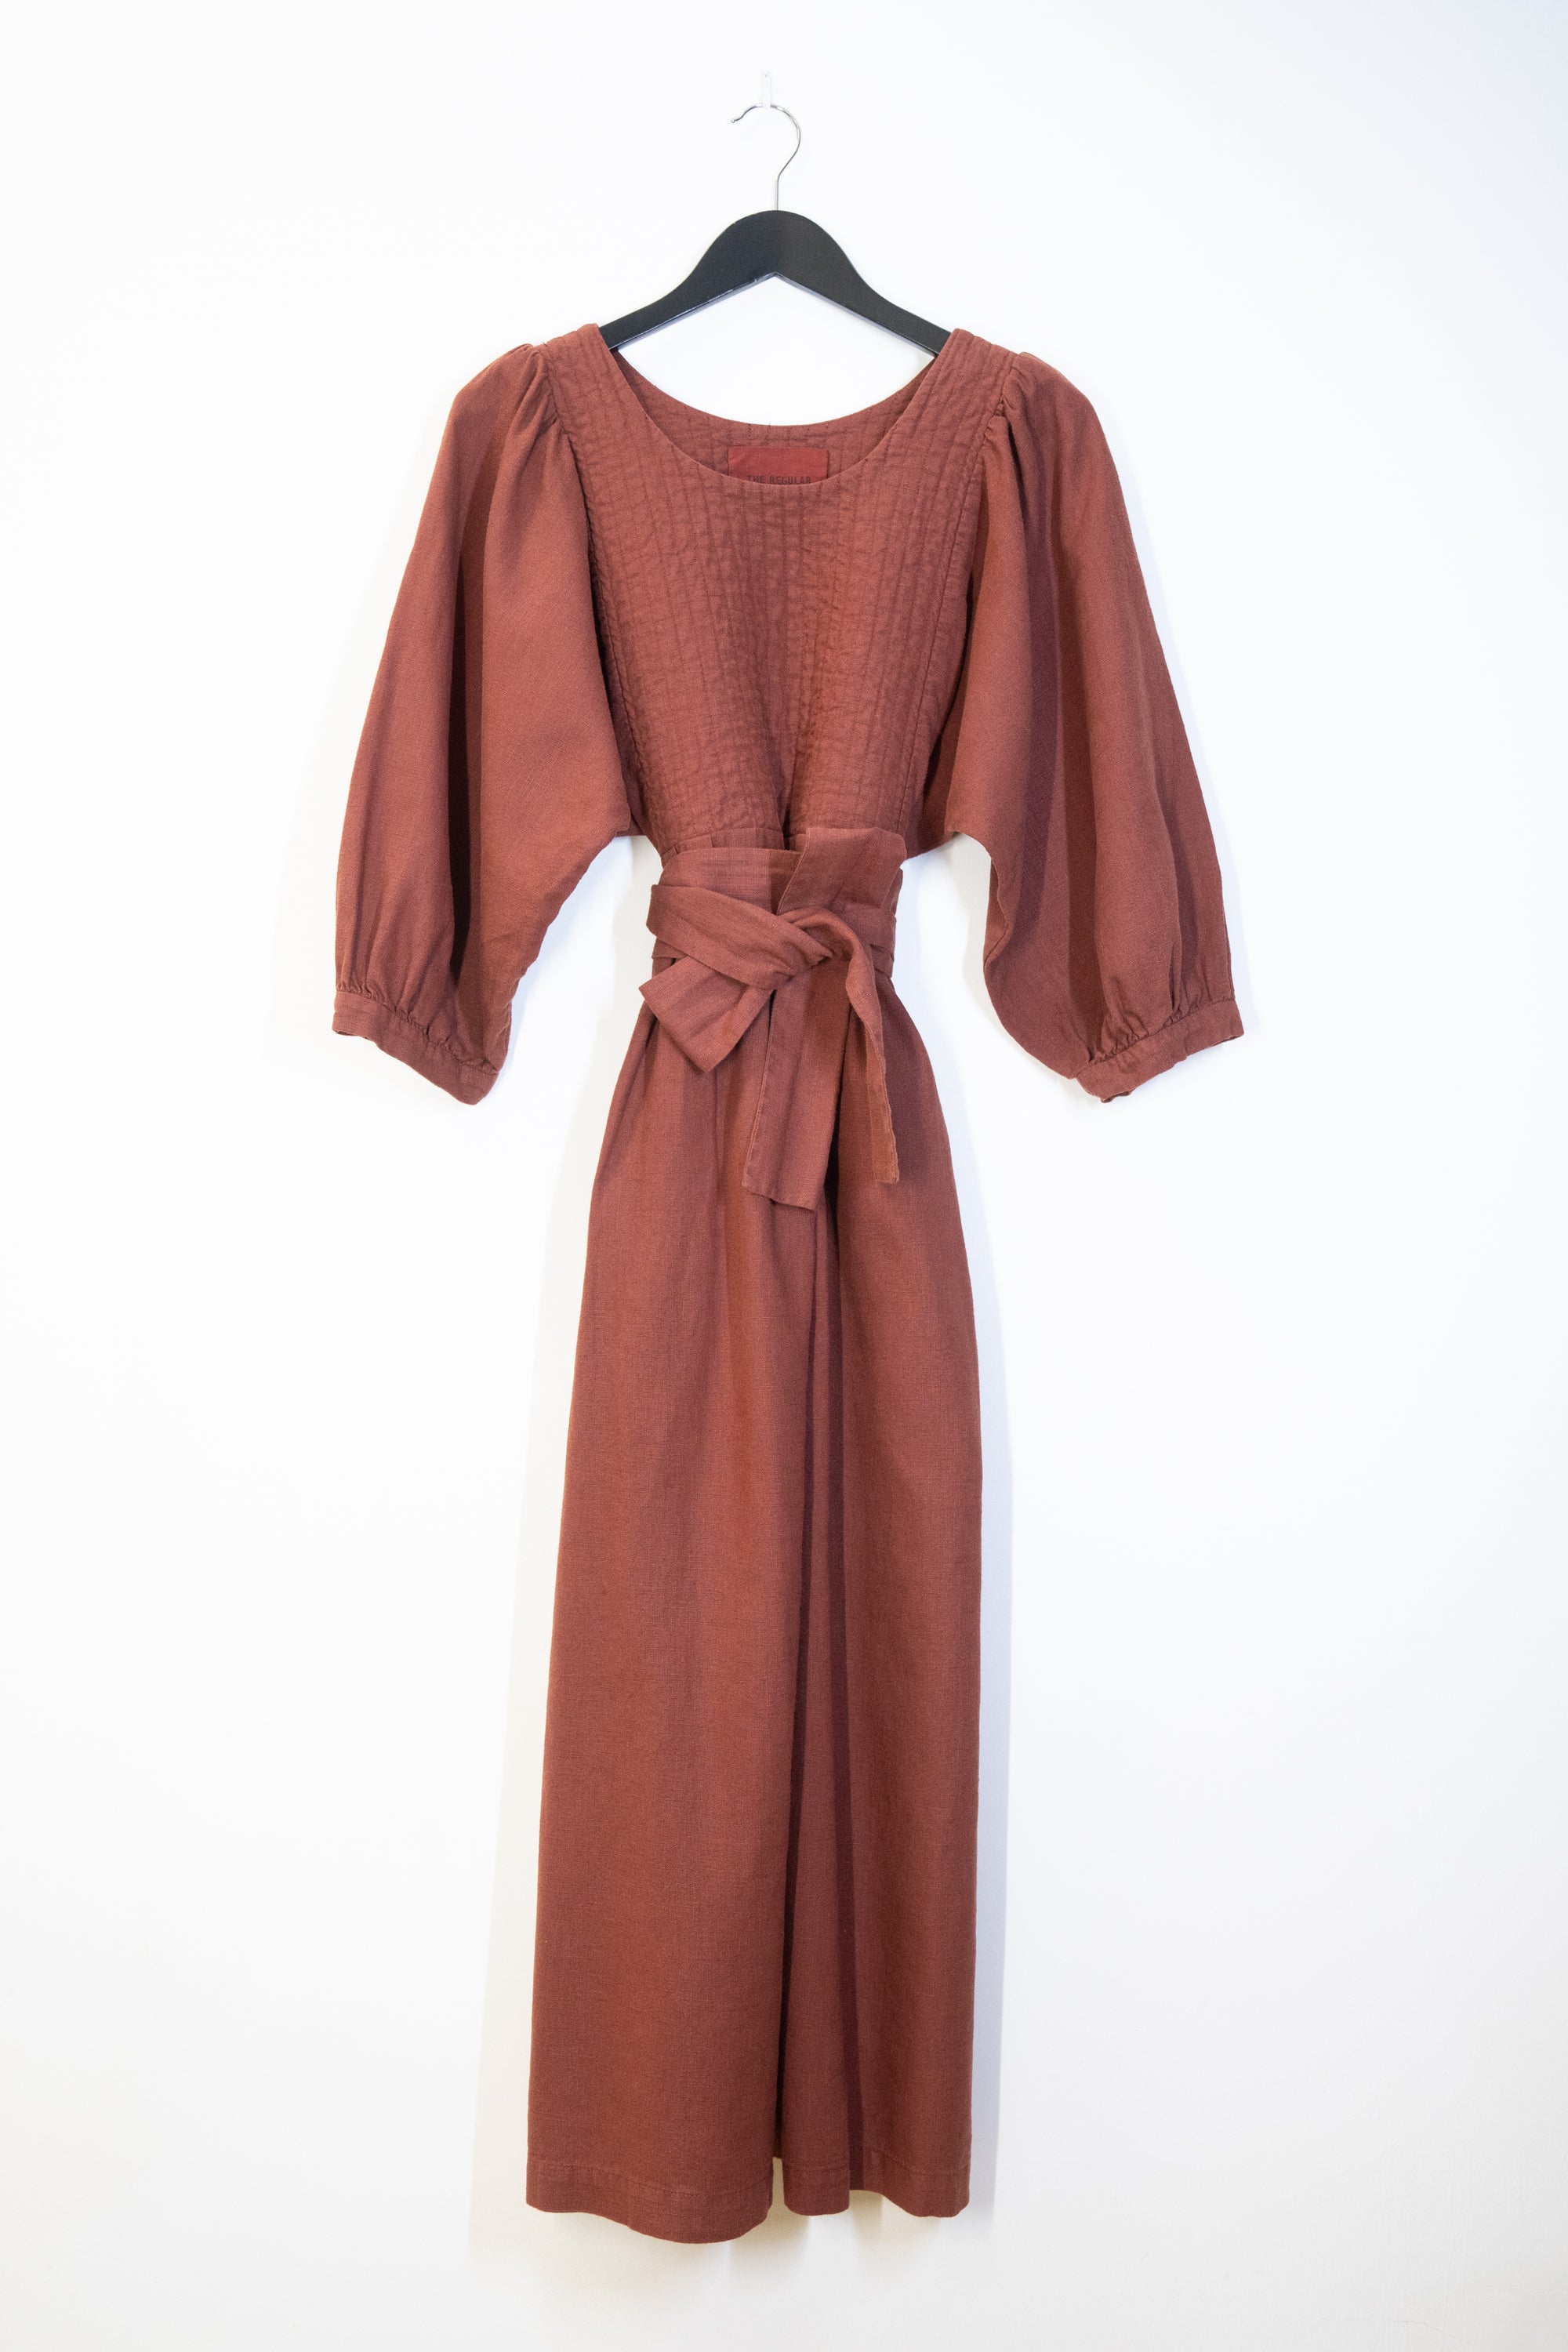 Quilt Dress - Rosewood Linen